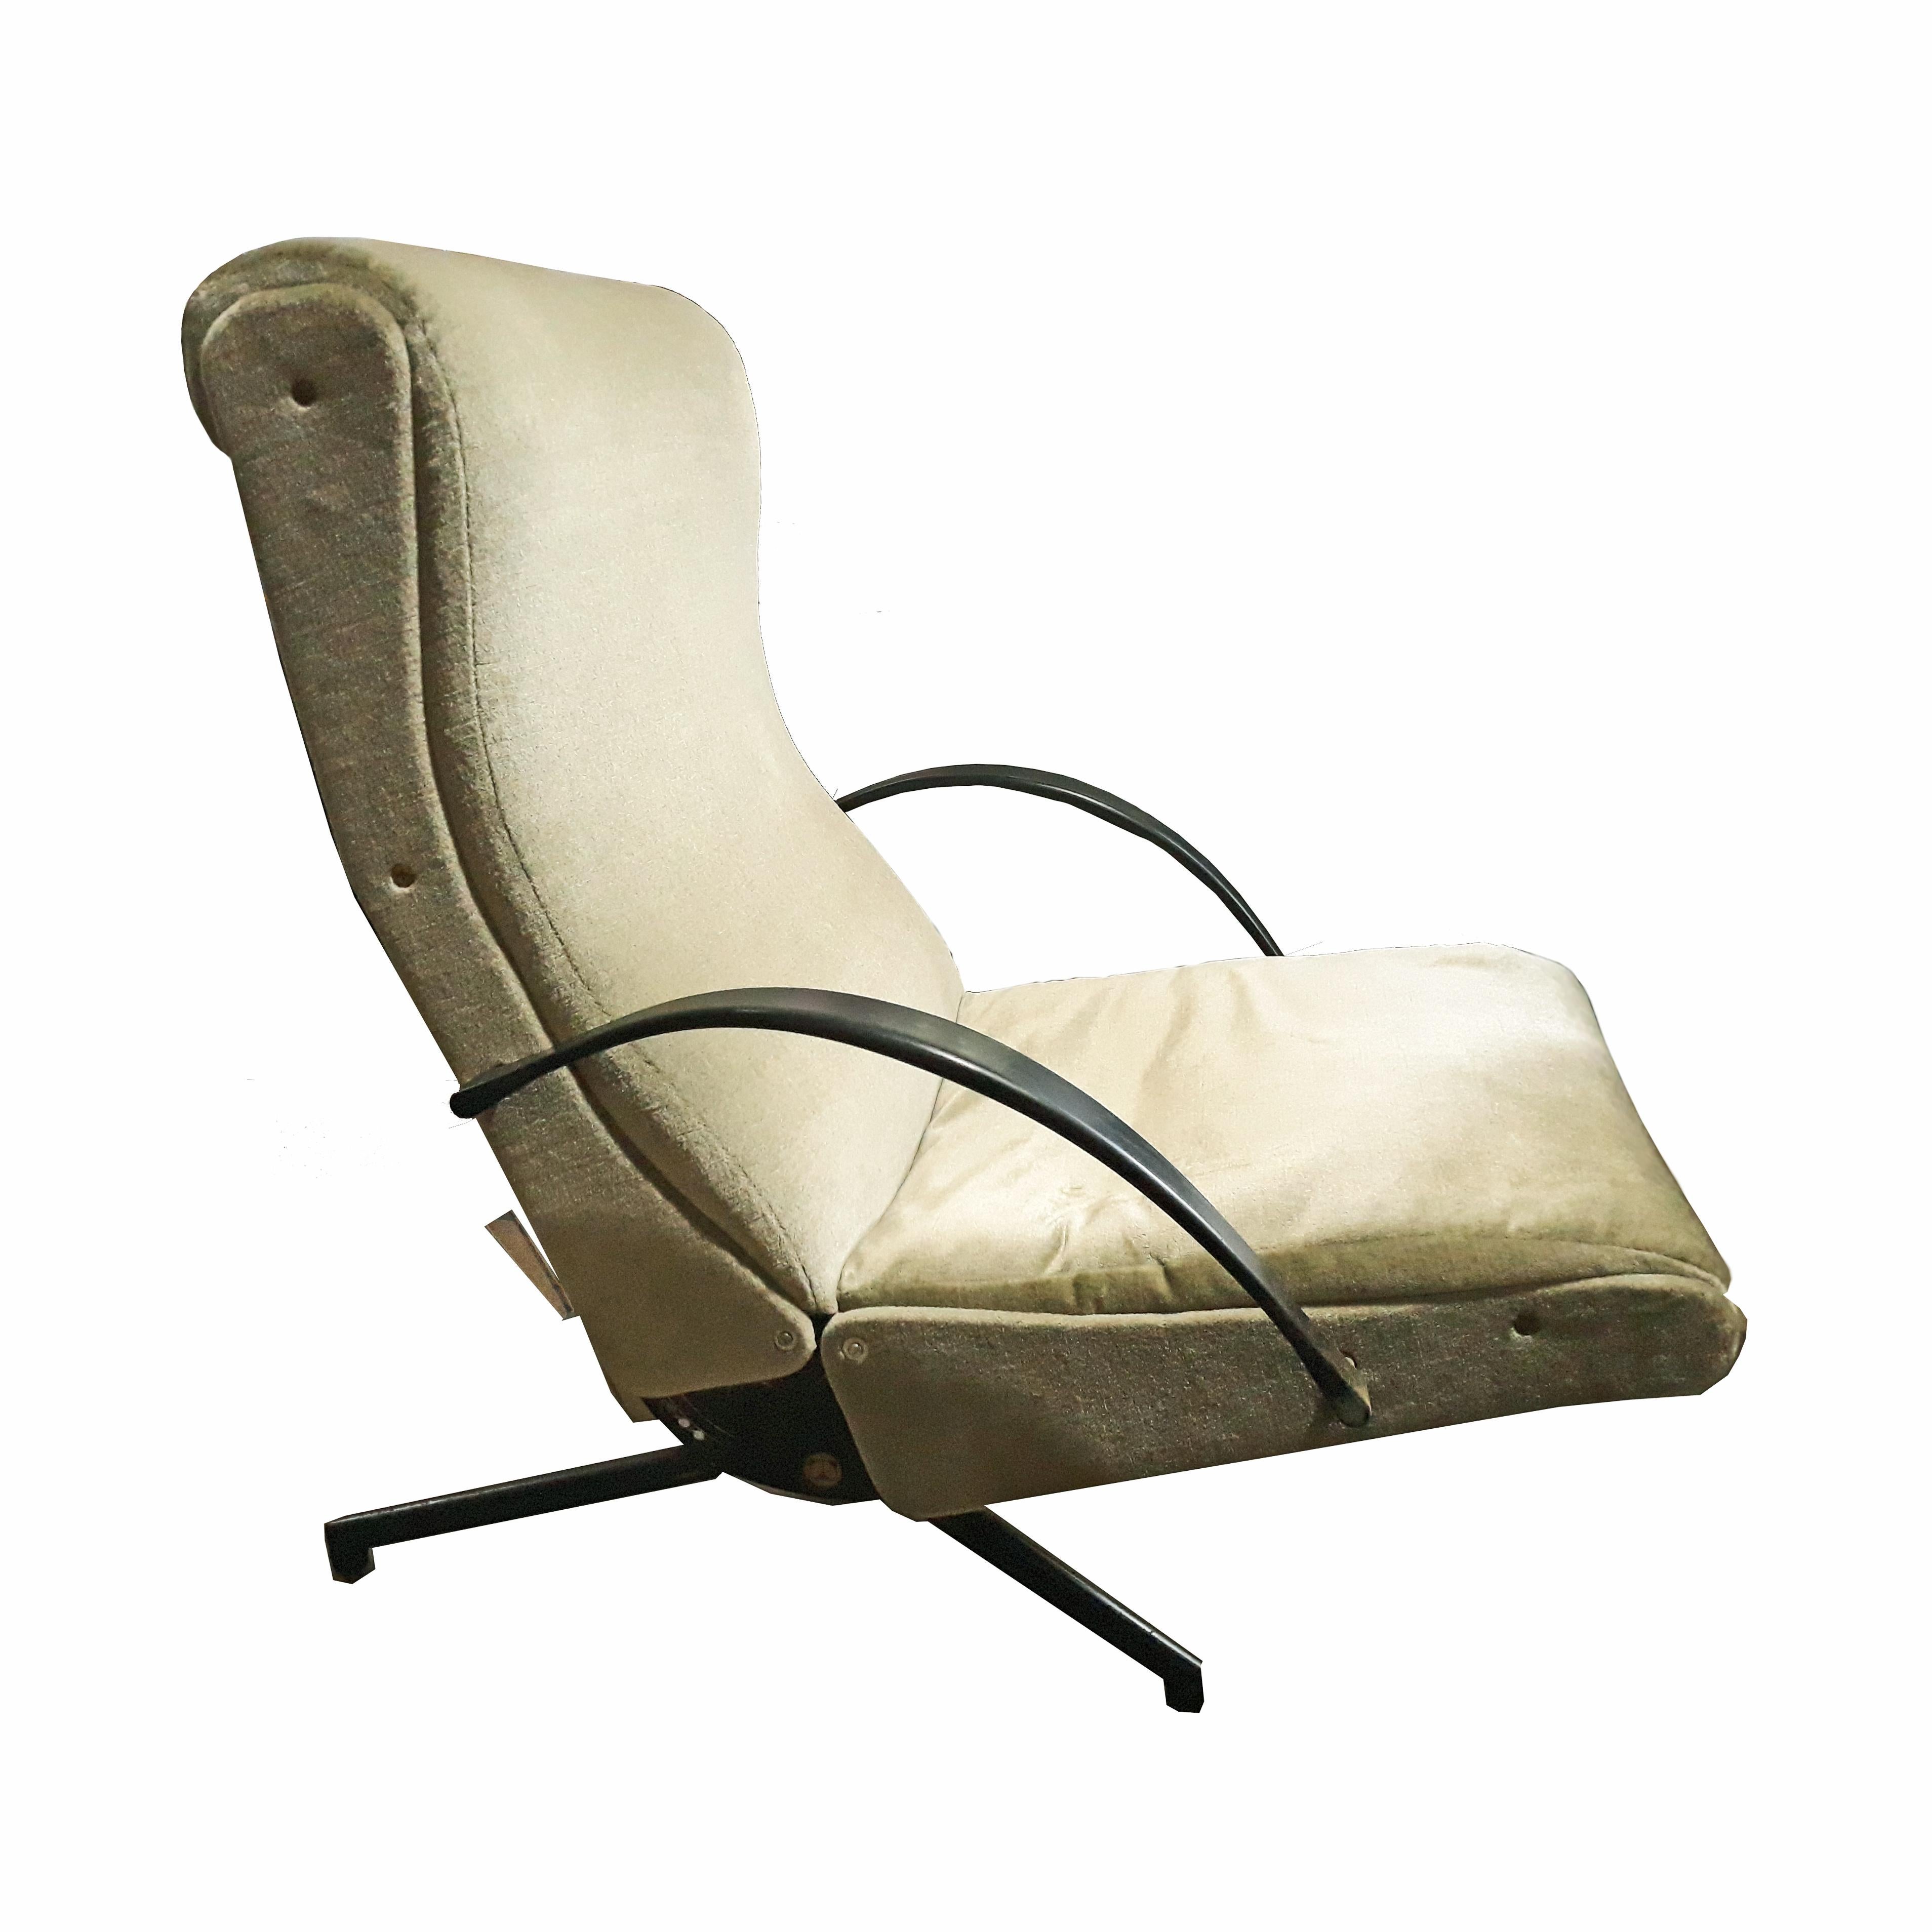 Mid-20th Century P40 Reclining Chair by Osvaldo Borsani for Tecno, Italy, 1955